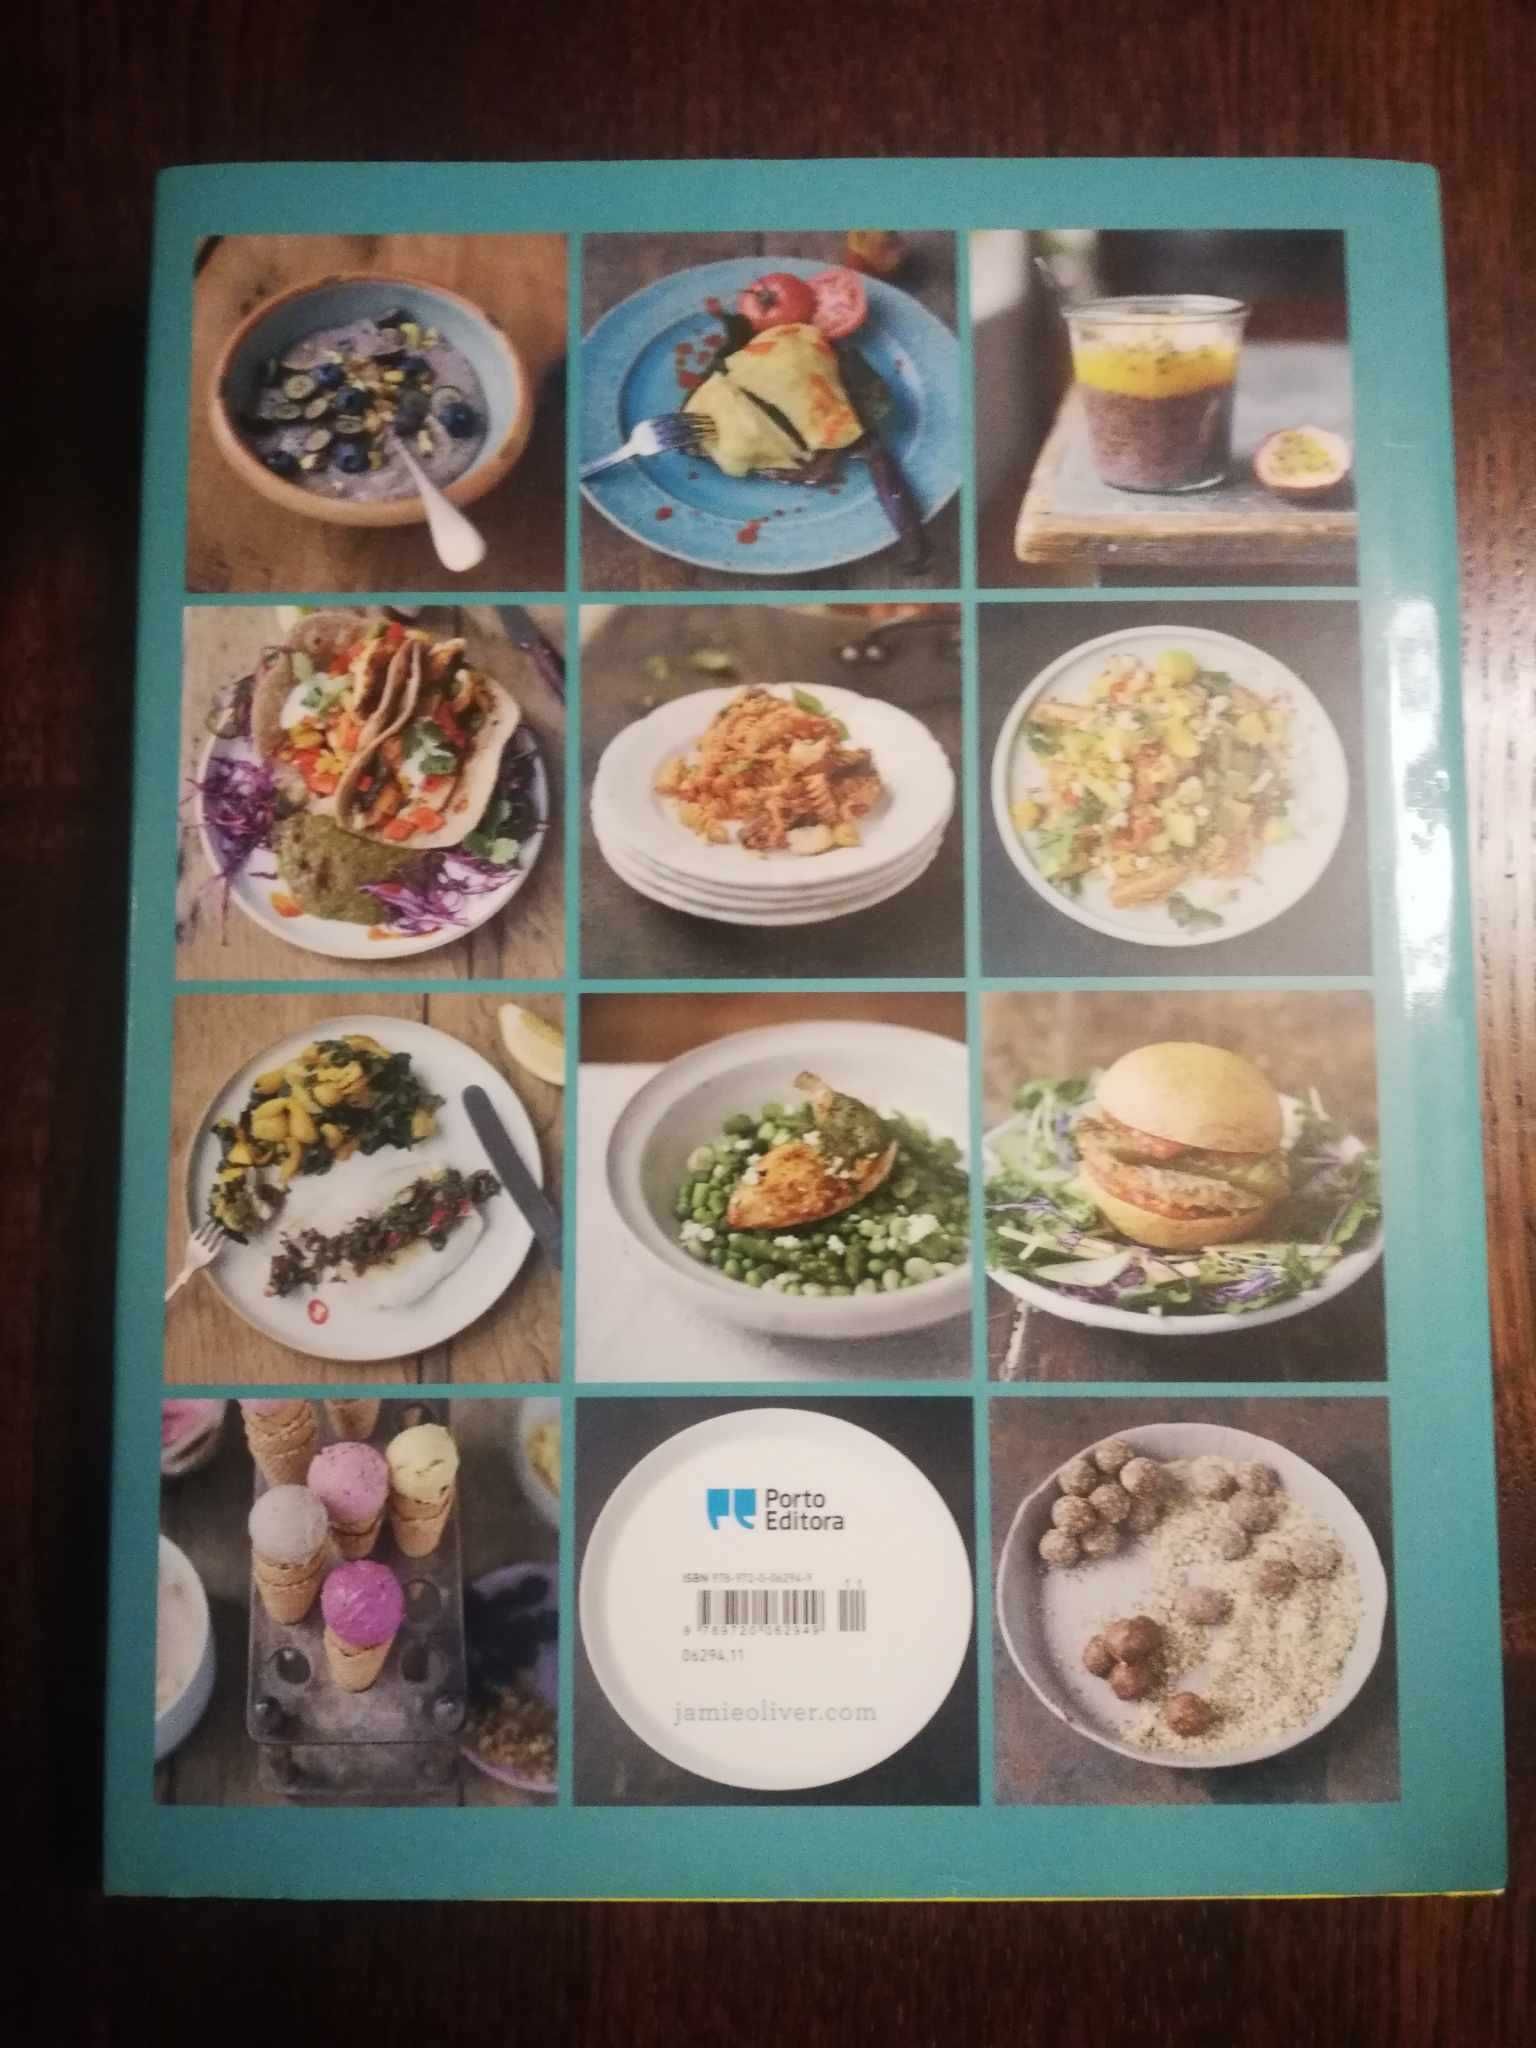 Livro de Culinária - Jamie Oliver Receitas Saudáveis